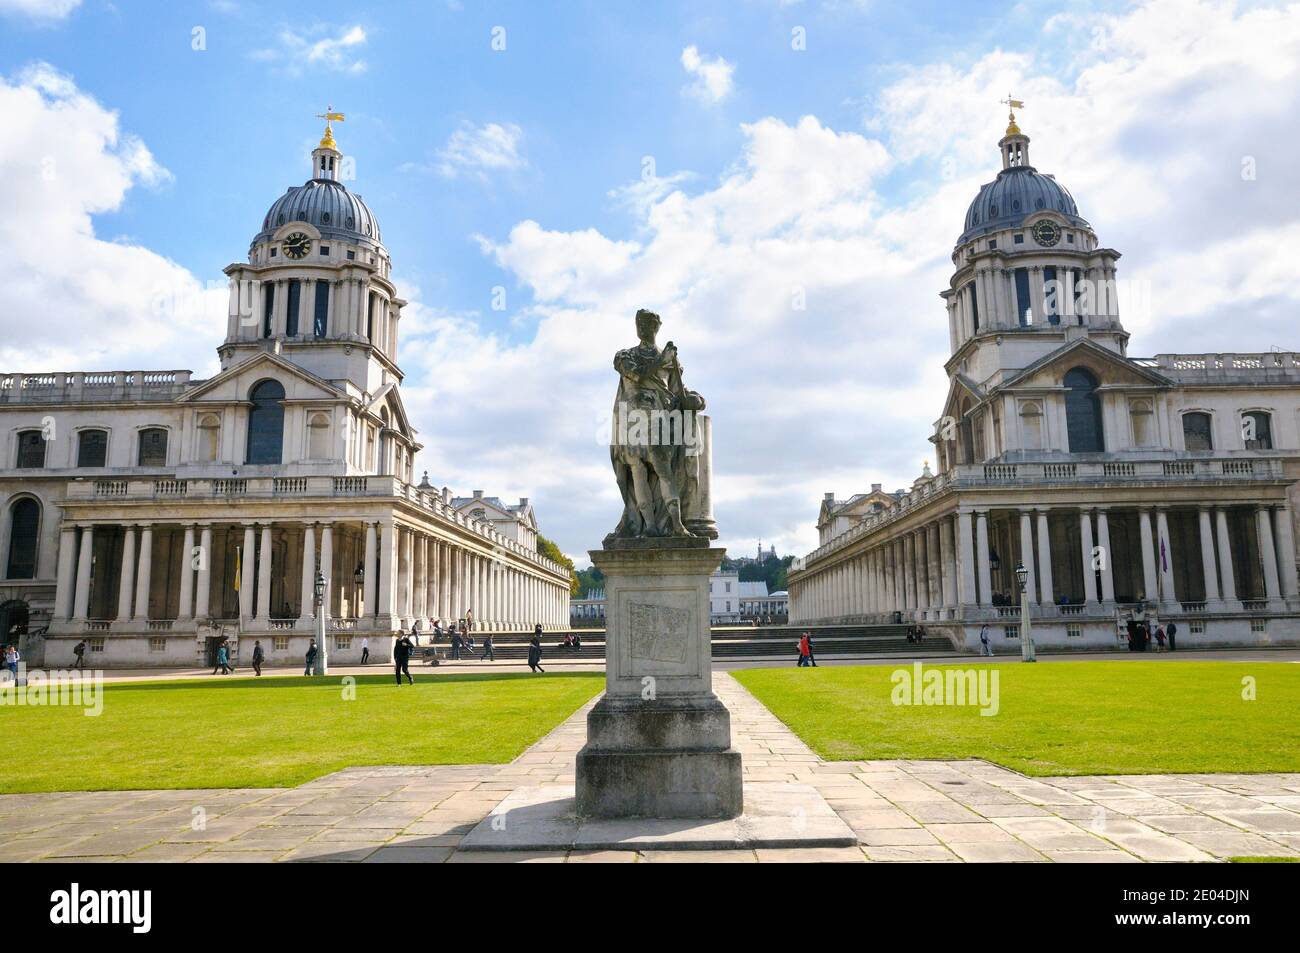 Old Royal Naval College (aujourd'hui l'Université de Greenwich) et le Roi George II statue, Greenwich, London, UK Banque D'Images